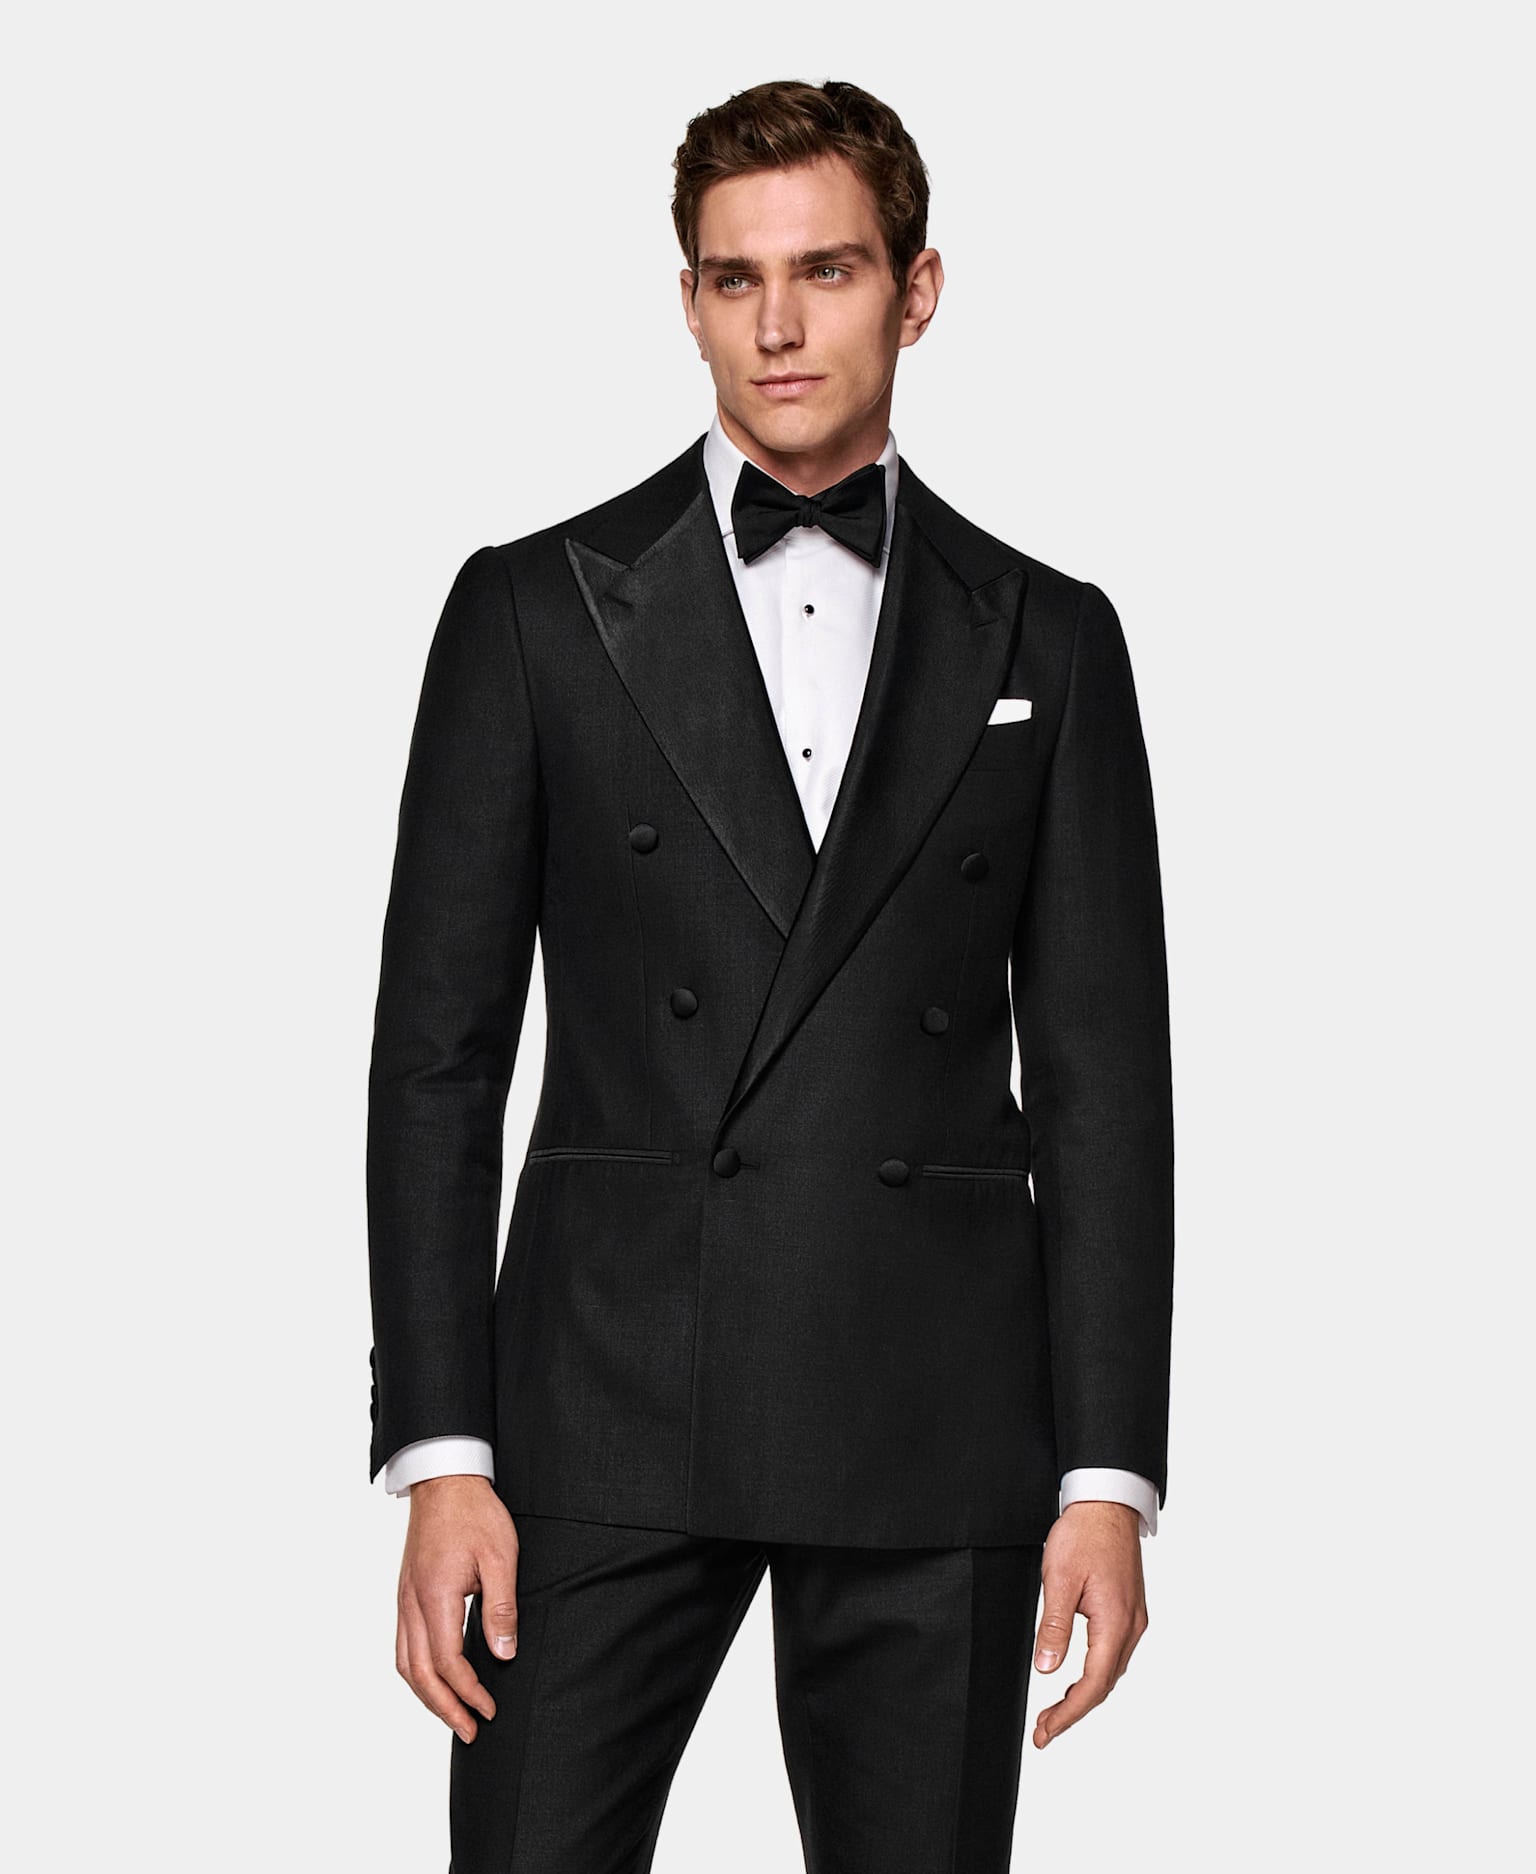 Ein Mann trägt einen zweireihigen Suitsupply Smoking als Black Tie-Bekleidung.